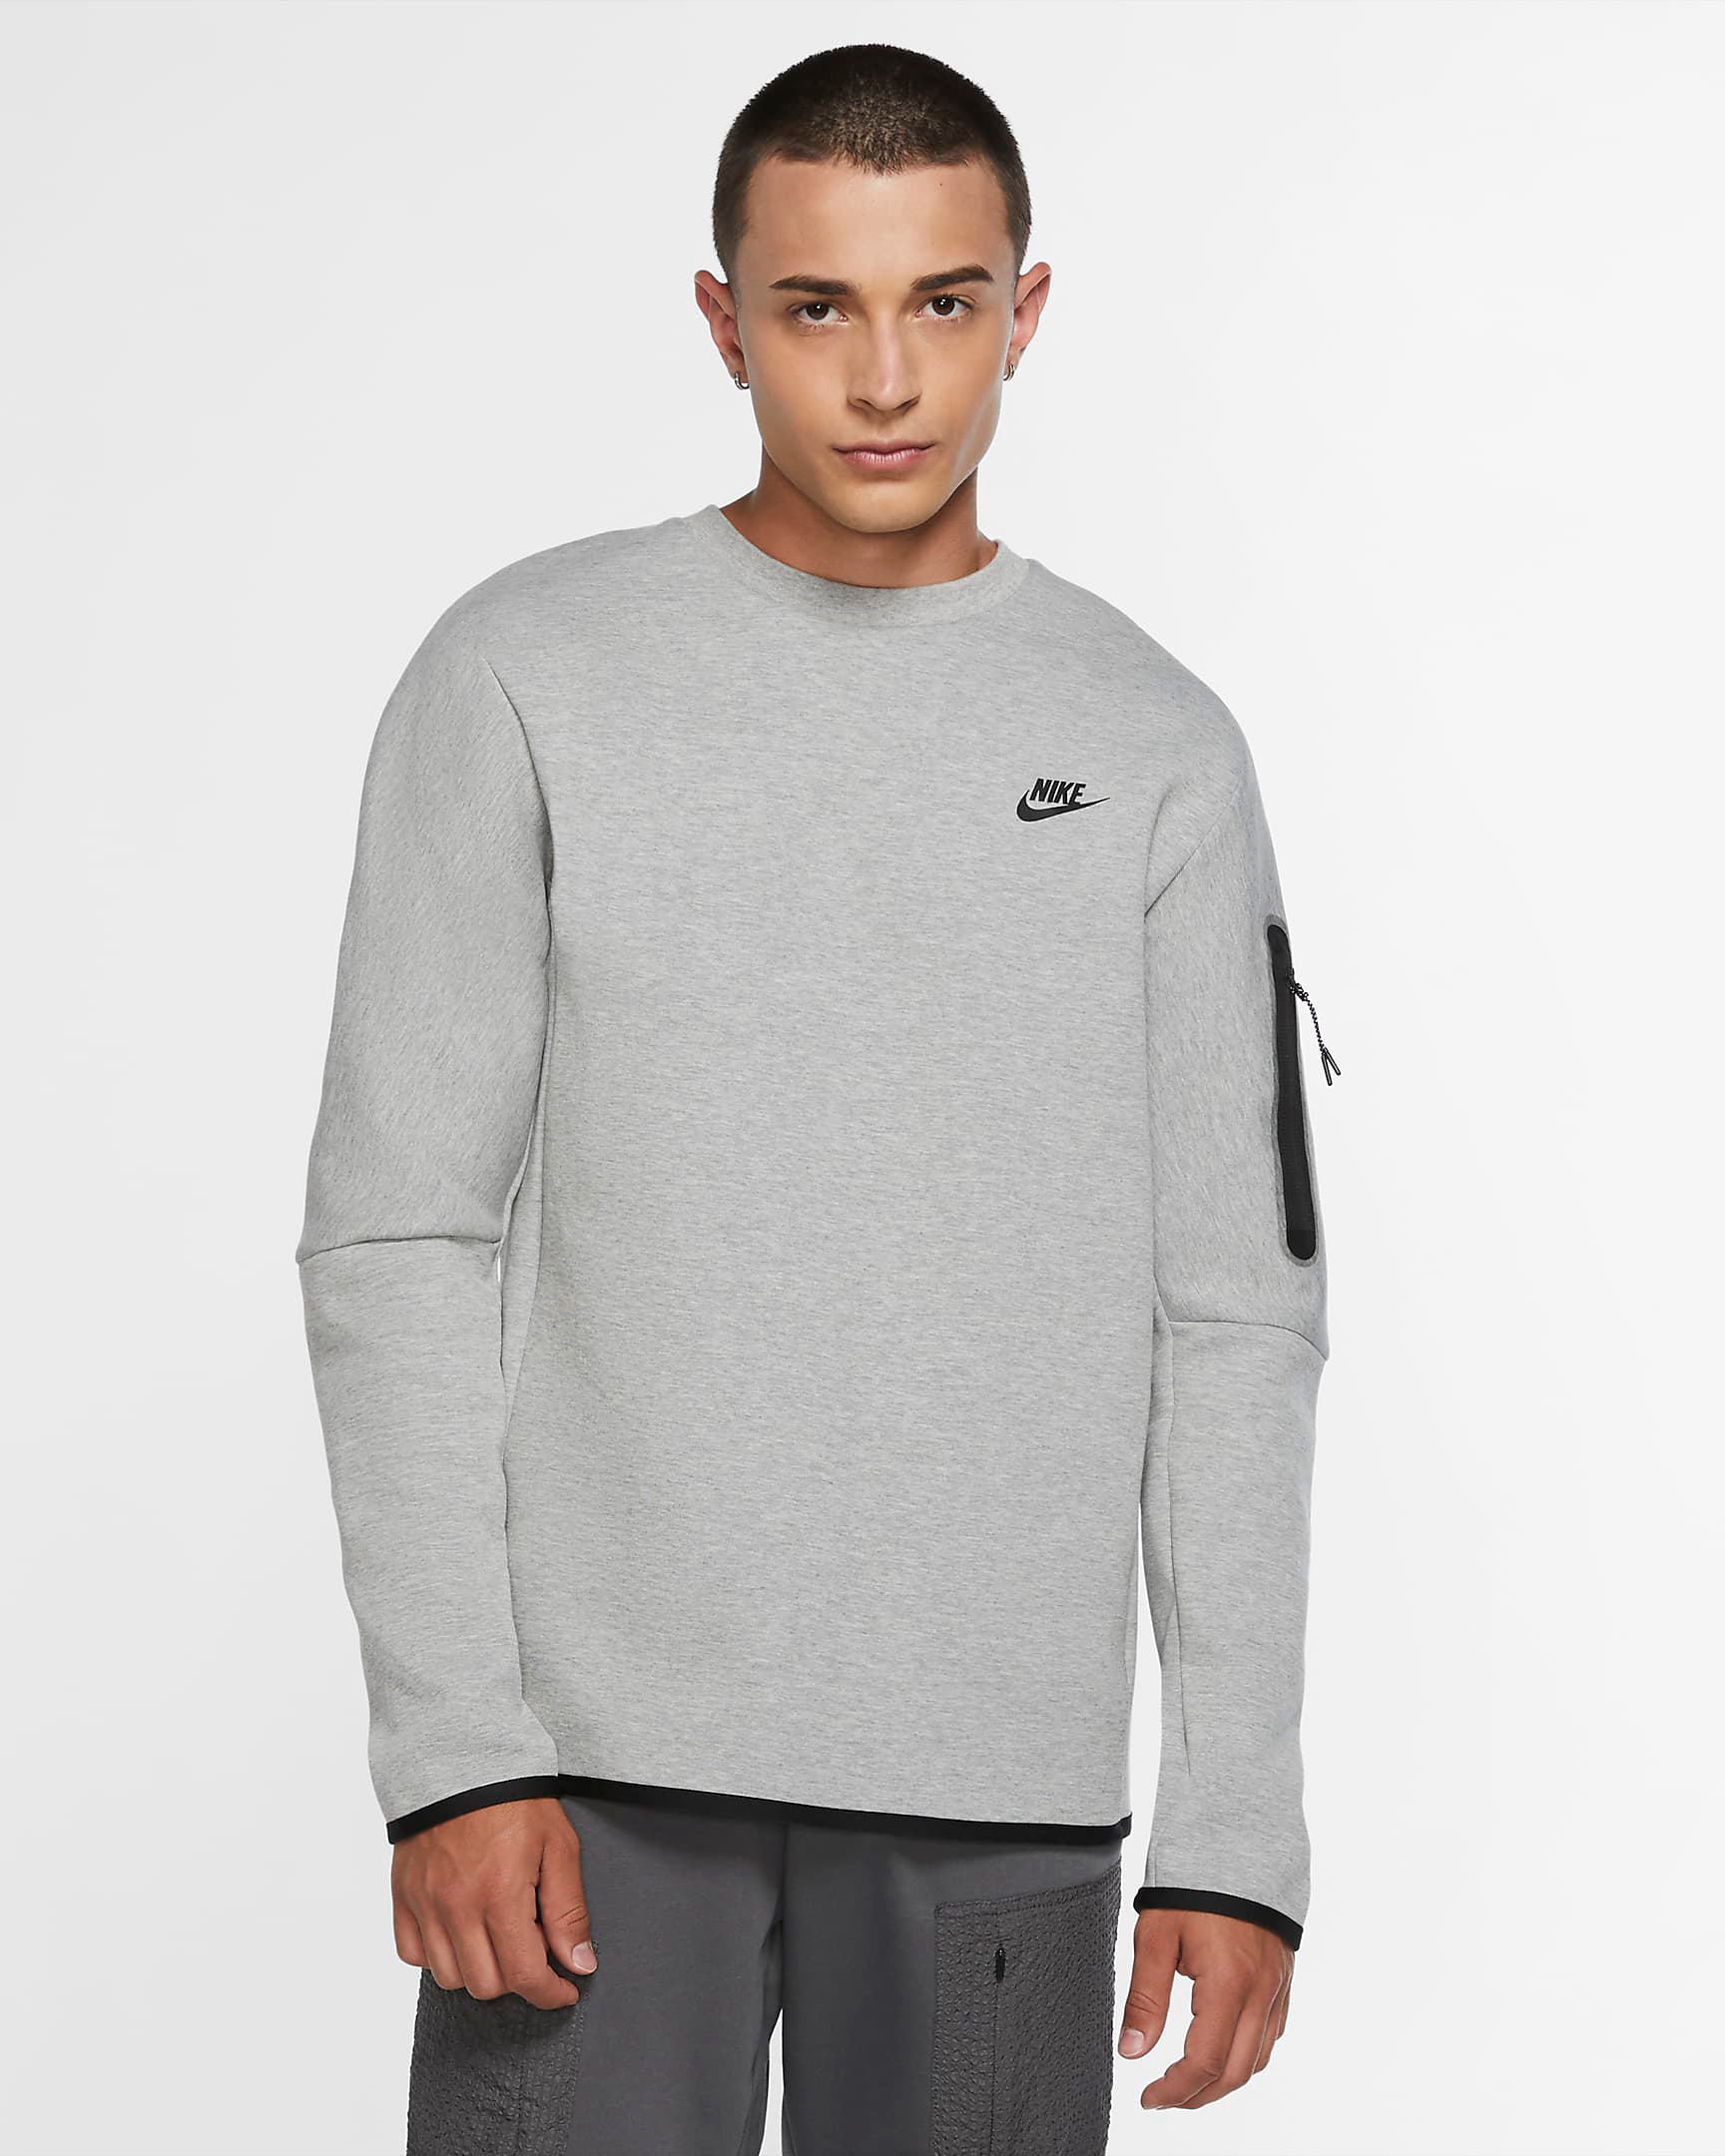 nike-tech-fleece-sweatshirt-grey